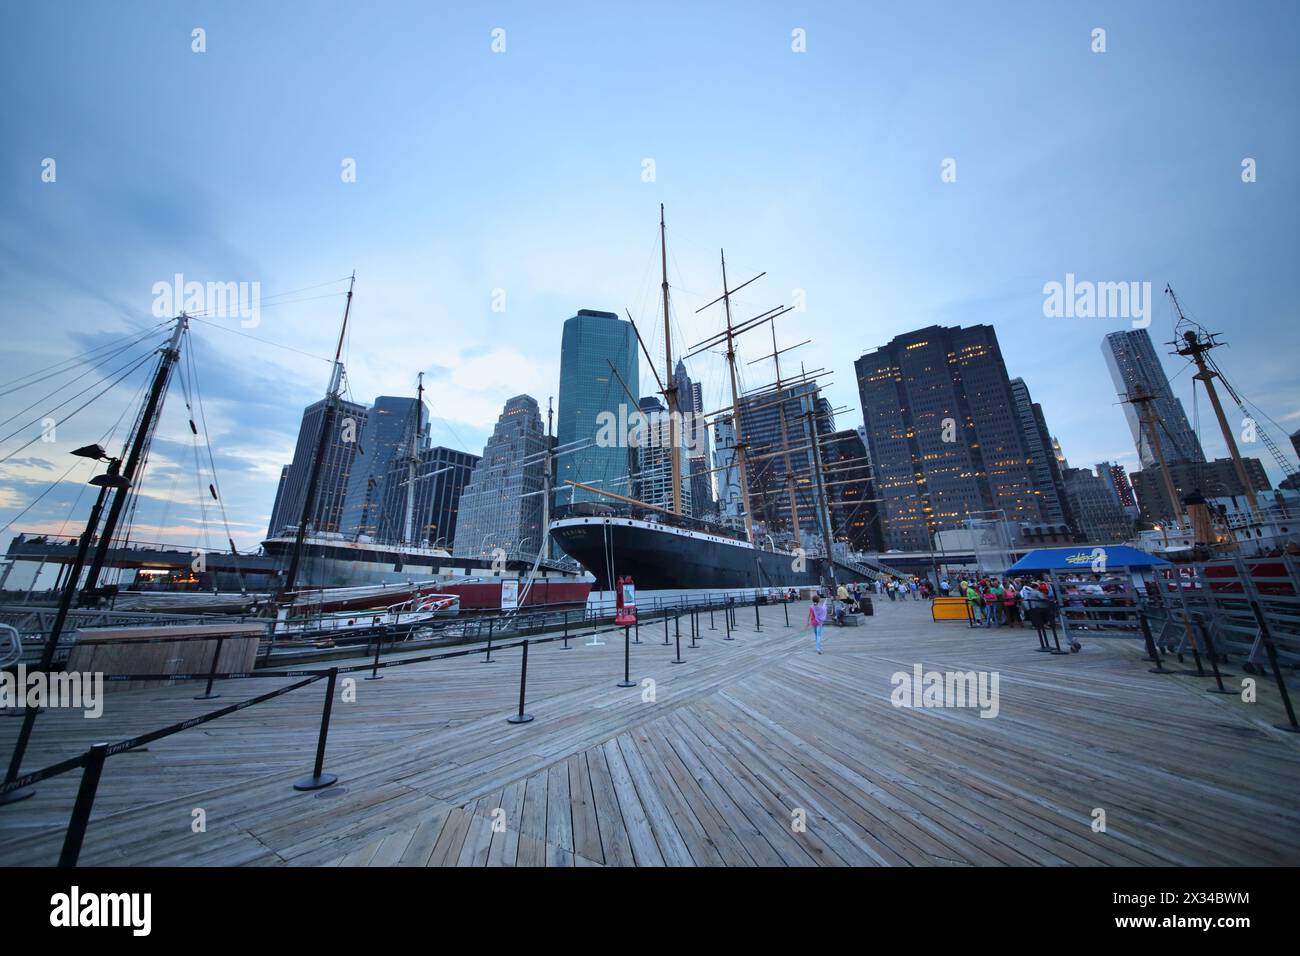 NEW YORK, États-Unis - 07 septembre 2014 : navires historiques devant les gratte-ciel dans le South Street Seaport dans la soirée Banque D'Images